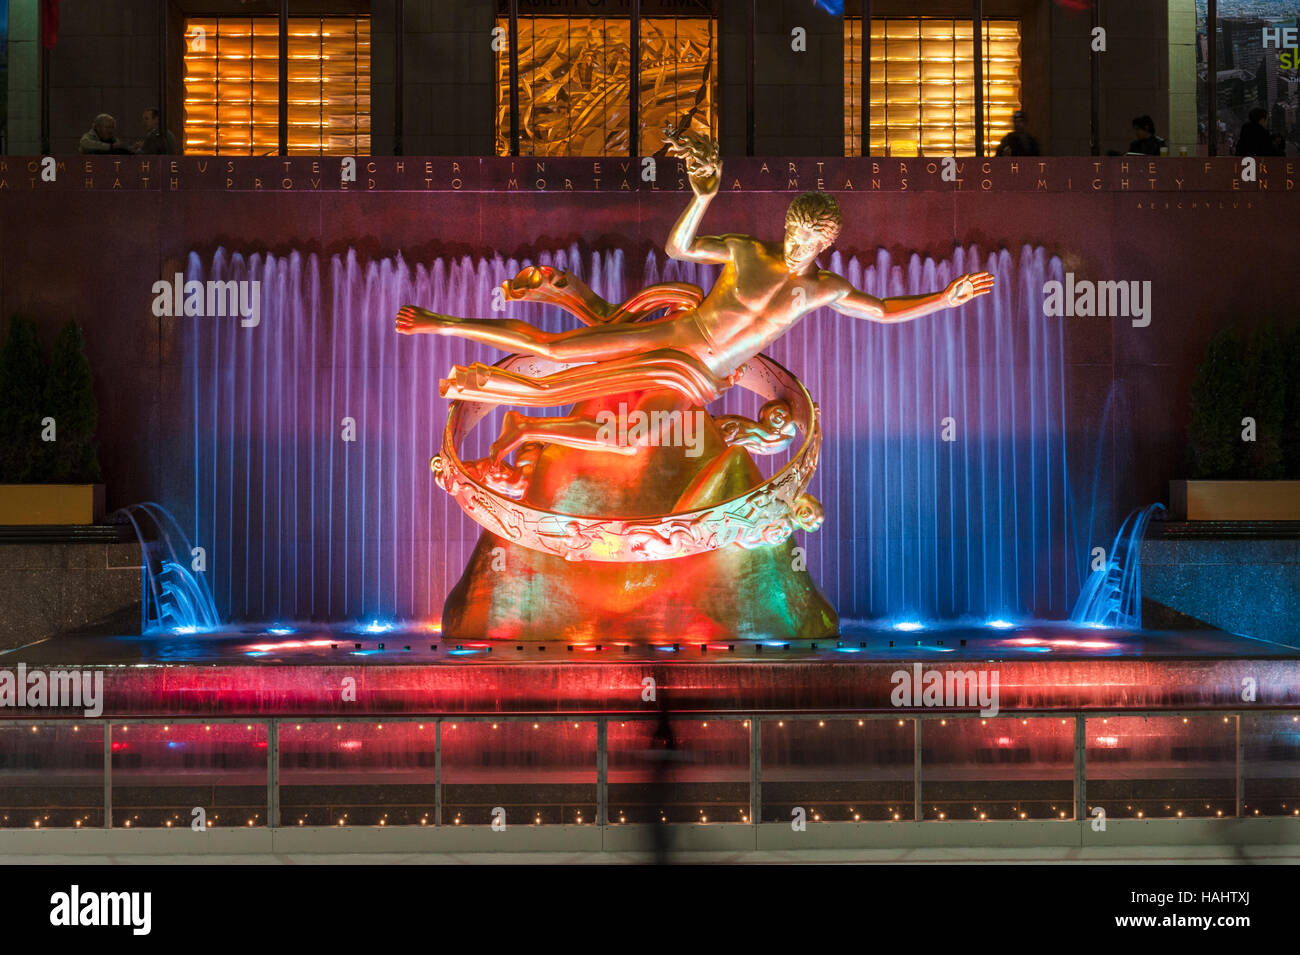 Manhattan, Rockefeller Center (Centre),New York City, NY, USA - Prometheus Sculpture de Paul Howard Manship, fontaine illuminée la nuit. Banque D'Images